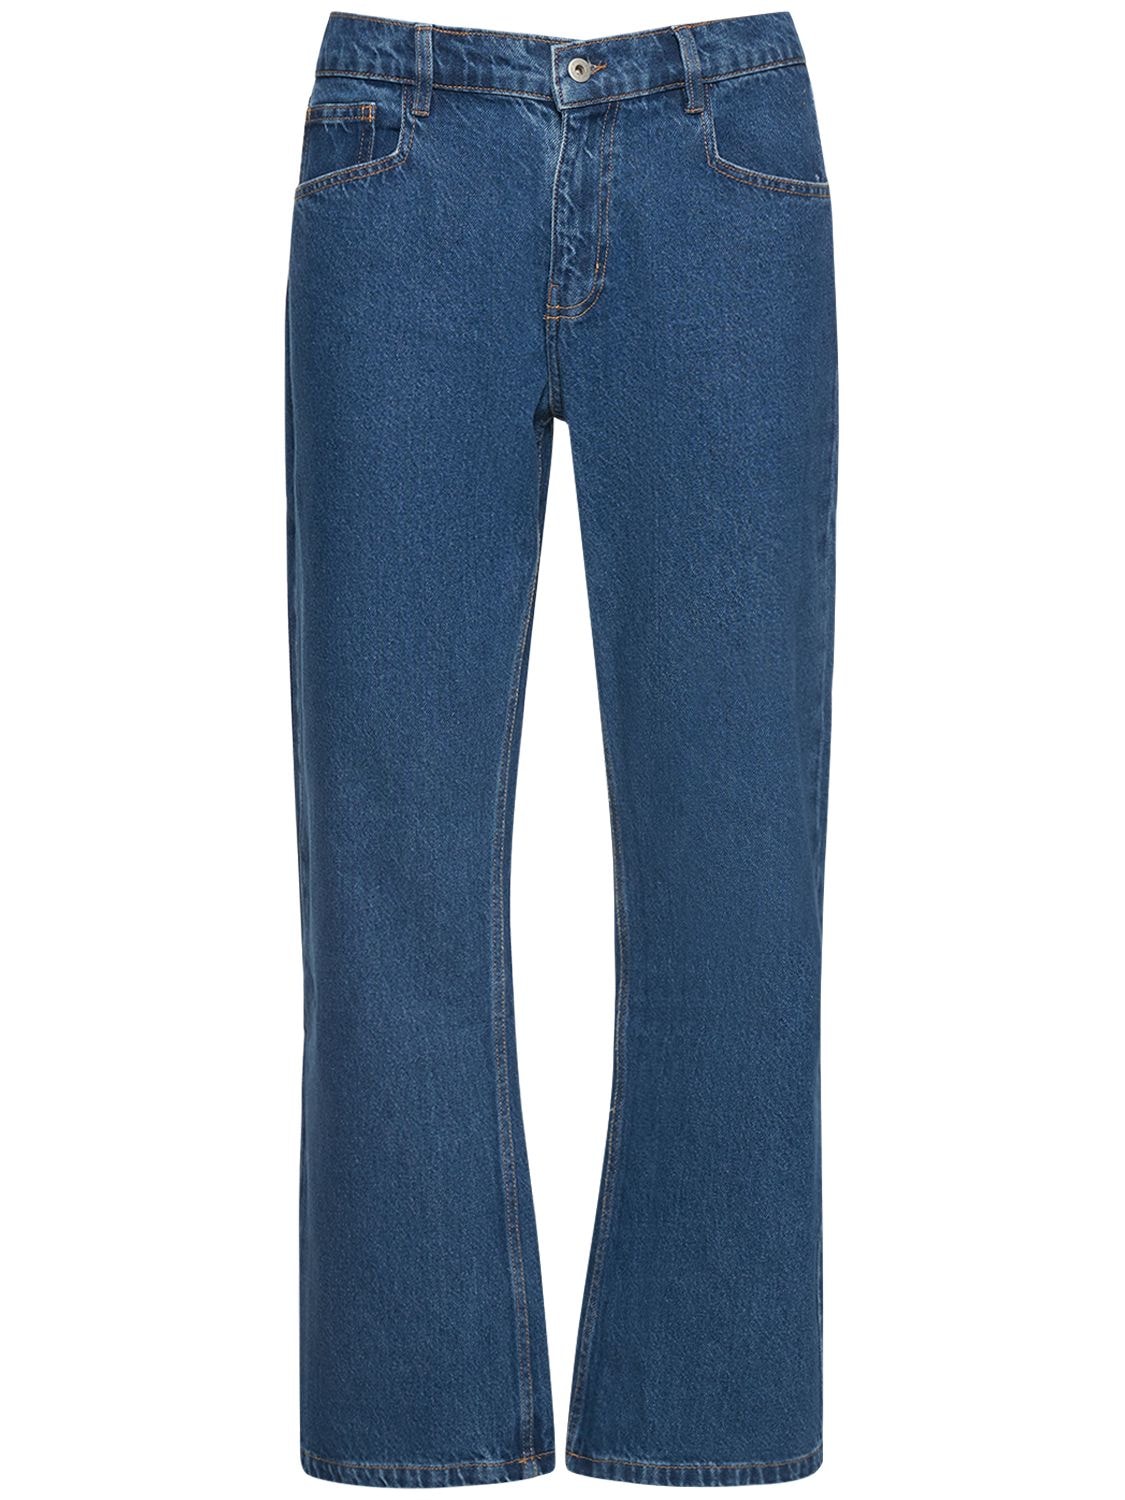 GIMAGUAS 23cm Straight Five Pocket Cotton Jeans